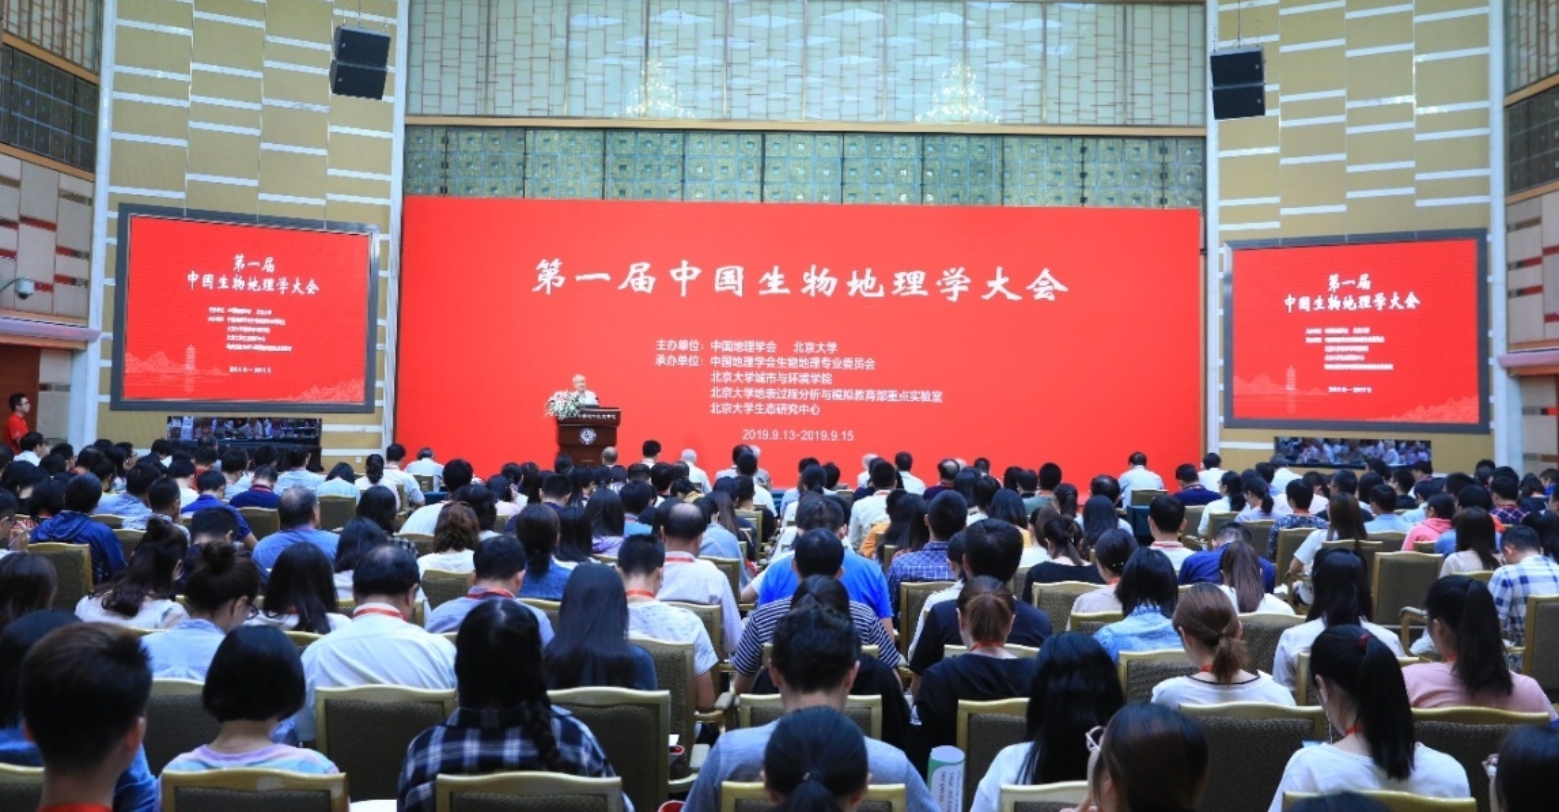 C:\Users\caifa\Downloads\第一届中国生物地理学大会（2019.09.14）\大场景\218A7518.JPG